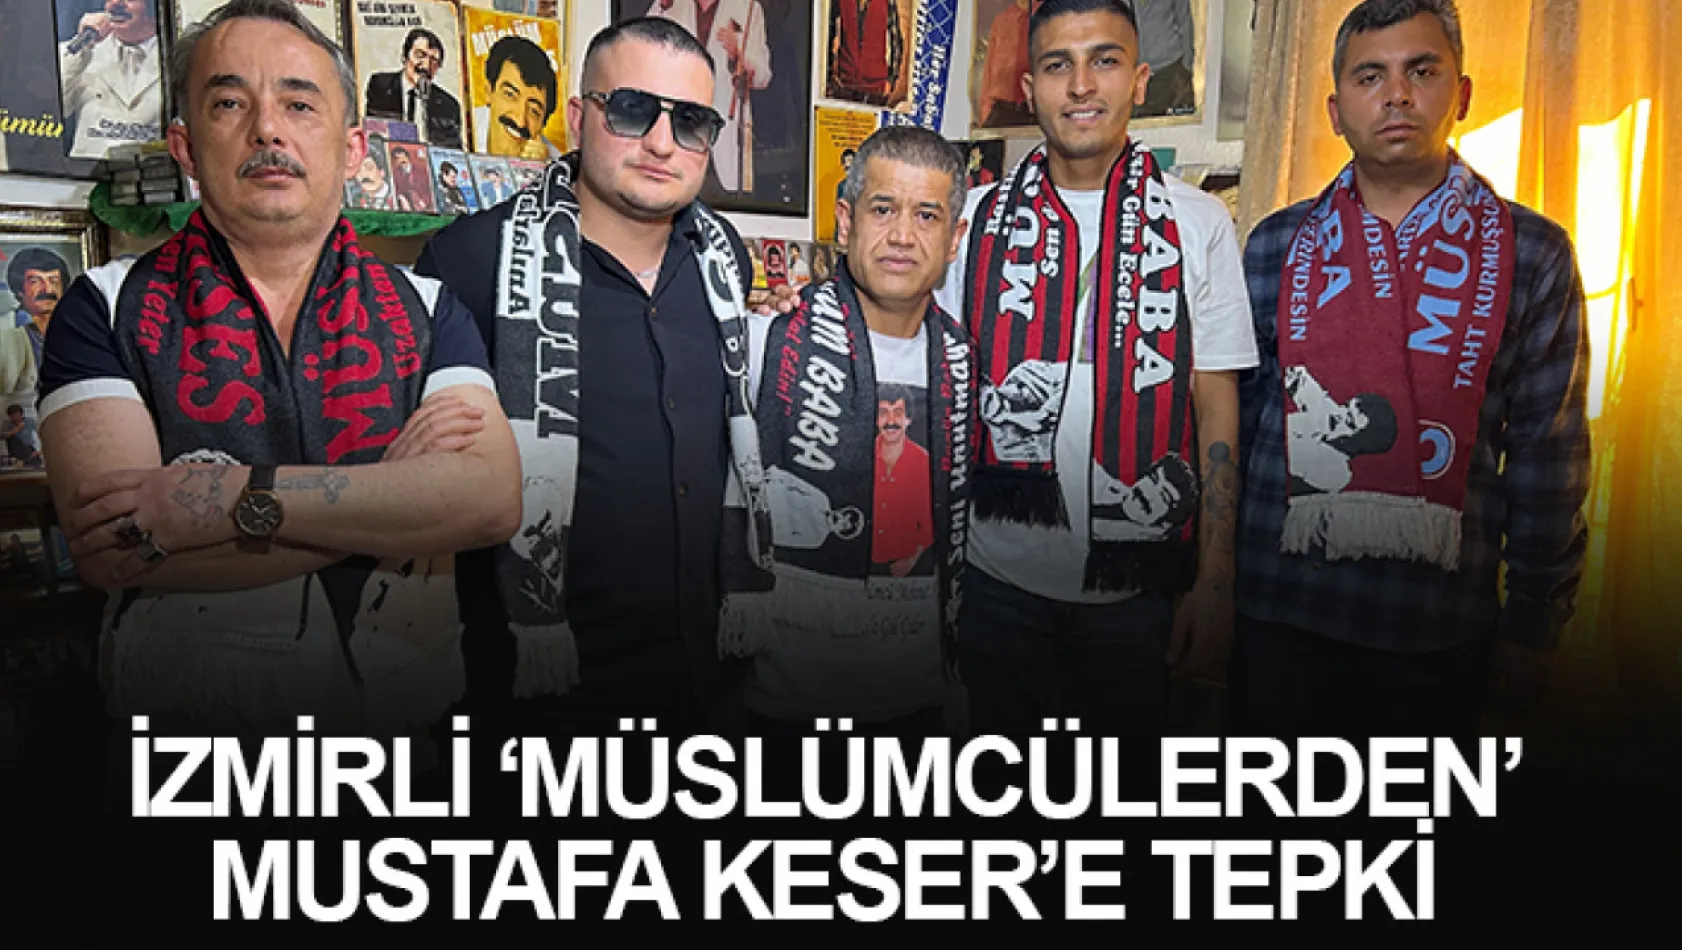 İzmirli 'Müslümcülerden' Mustafa Keser'e tepki: 'Özür bekliyoruz'